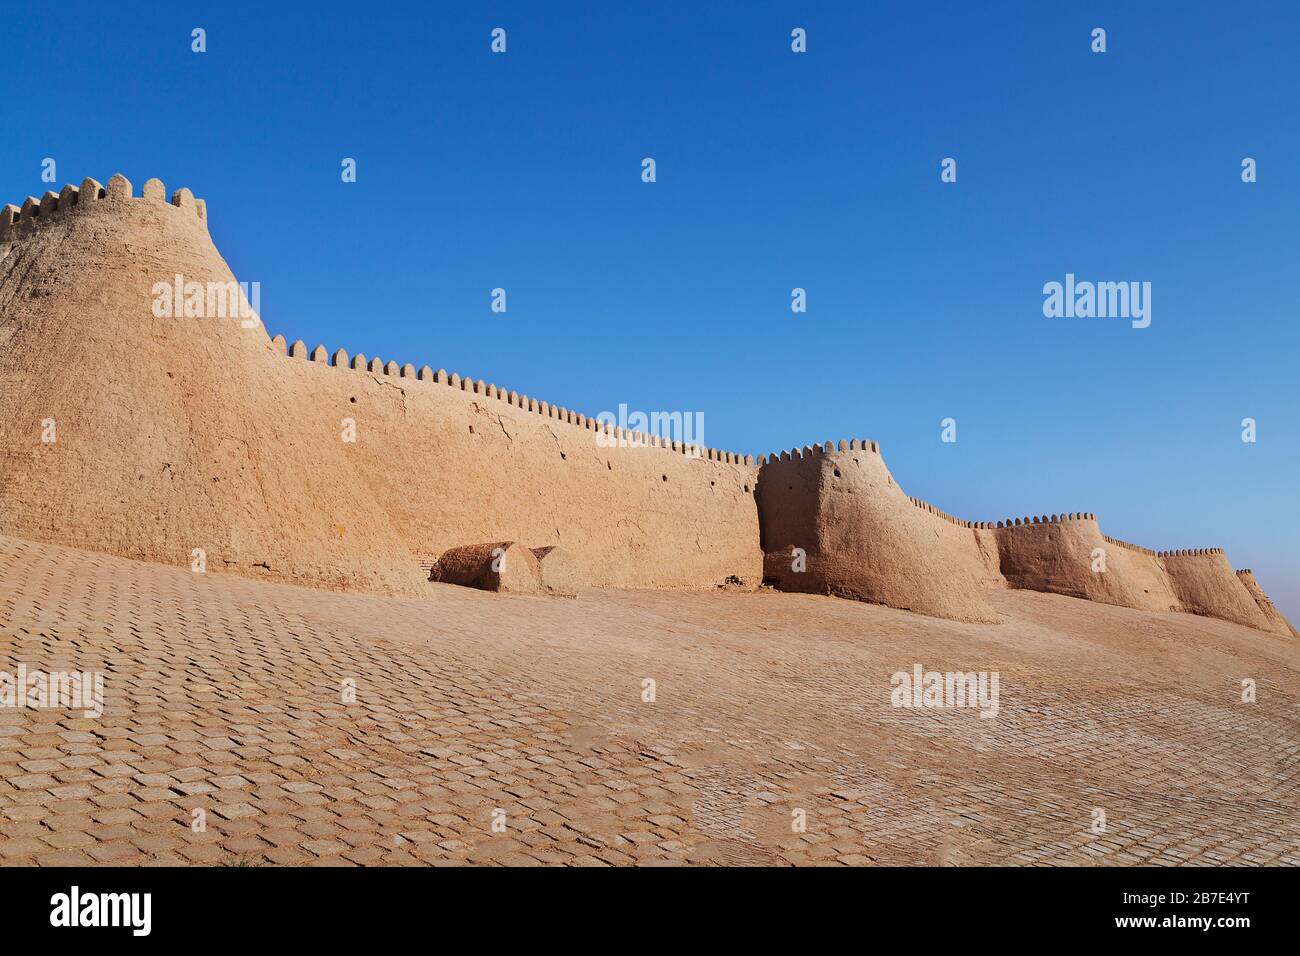 City walls of the ancient city of Khiva, Uzbekistan Stock Photo